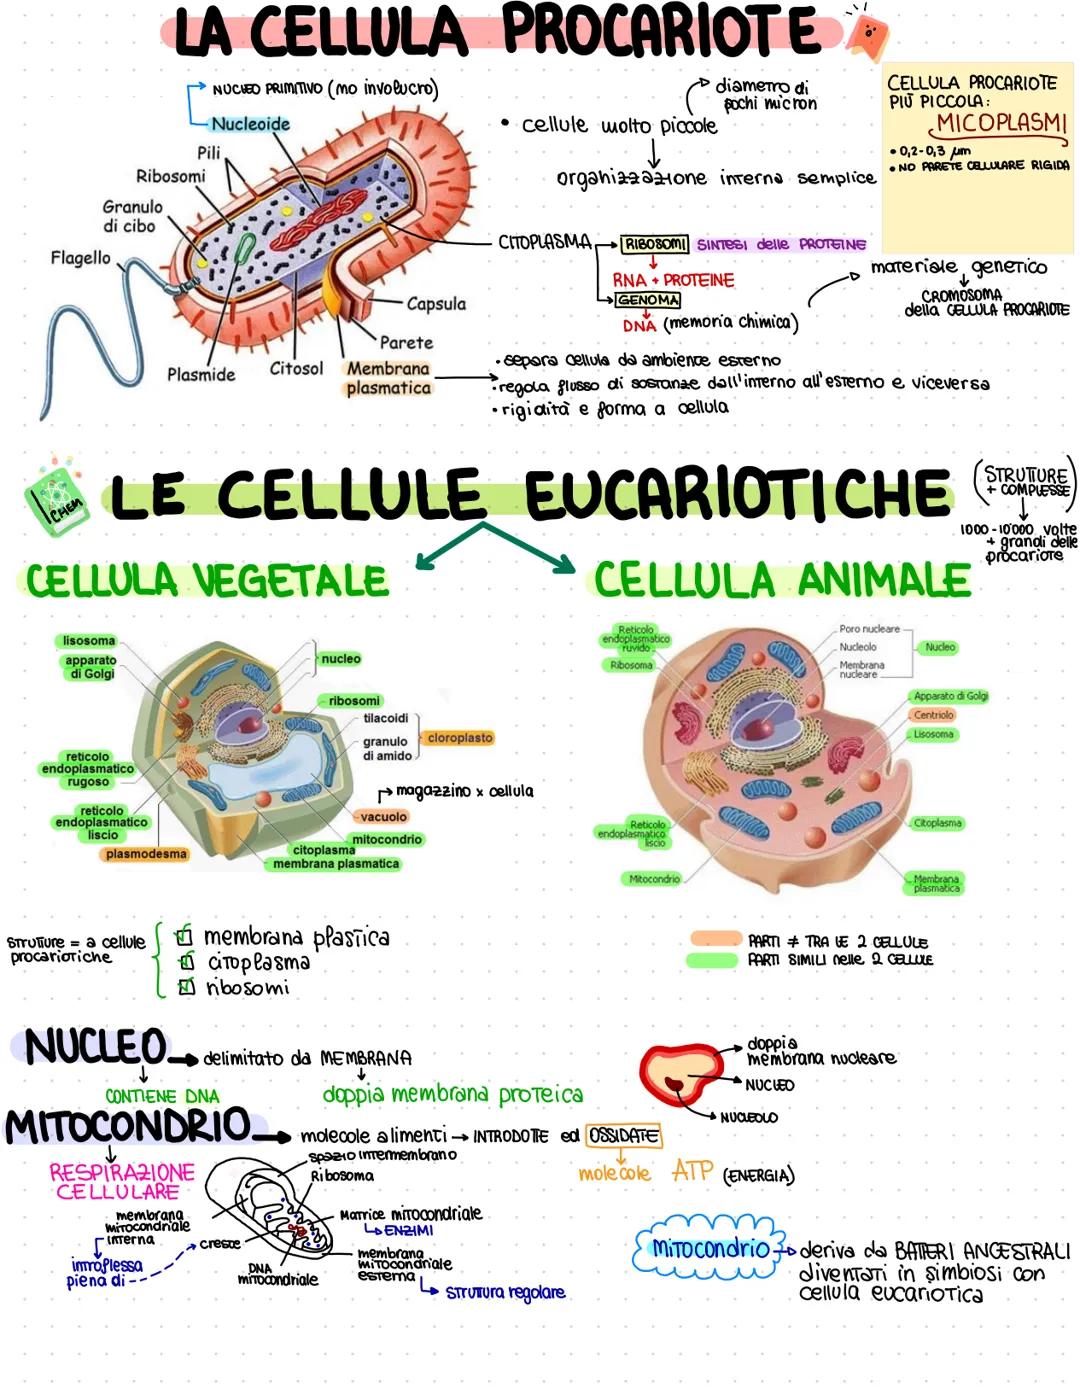 Flagello
Granulo
di cibo
CHEM
reticolo
endoplasmatico
rugoso
Ribosomi
reticolo
endoplasmatico
liscio
LA CELLULA PROCARIOTE
NUCHED PRIMITIVO 